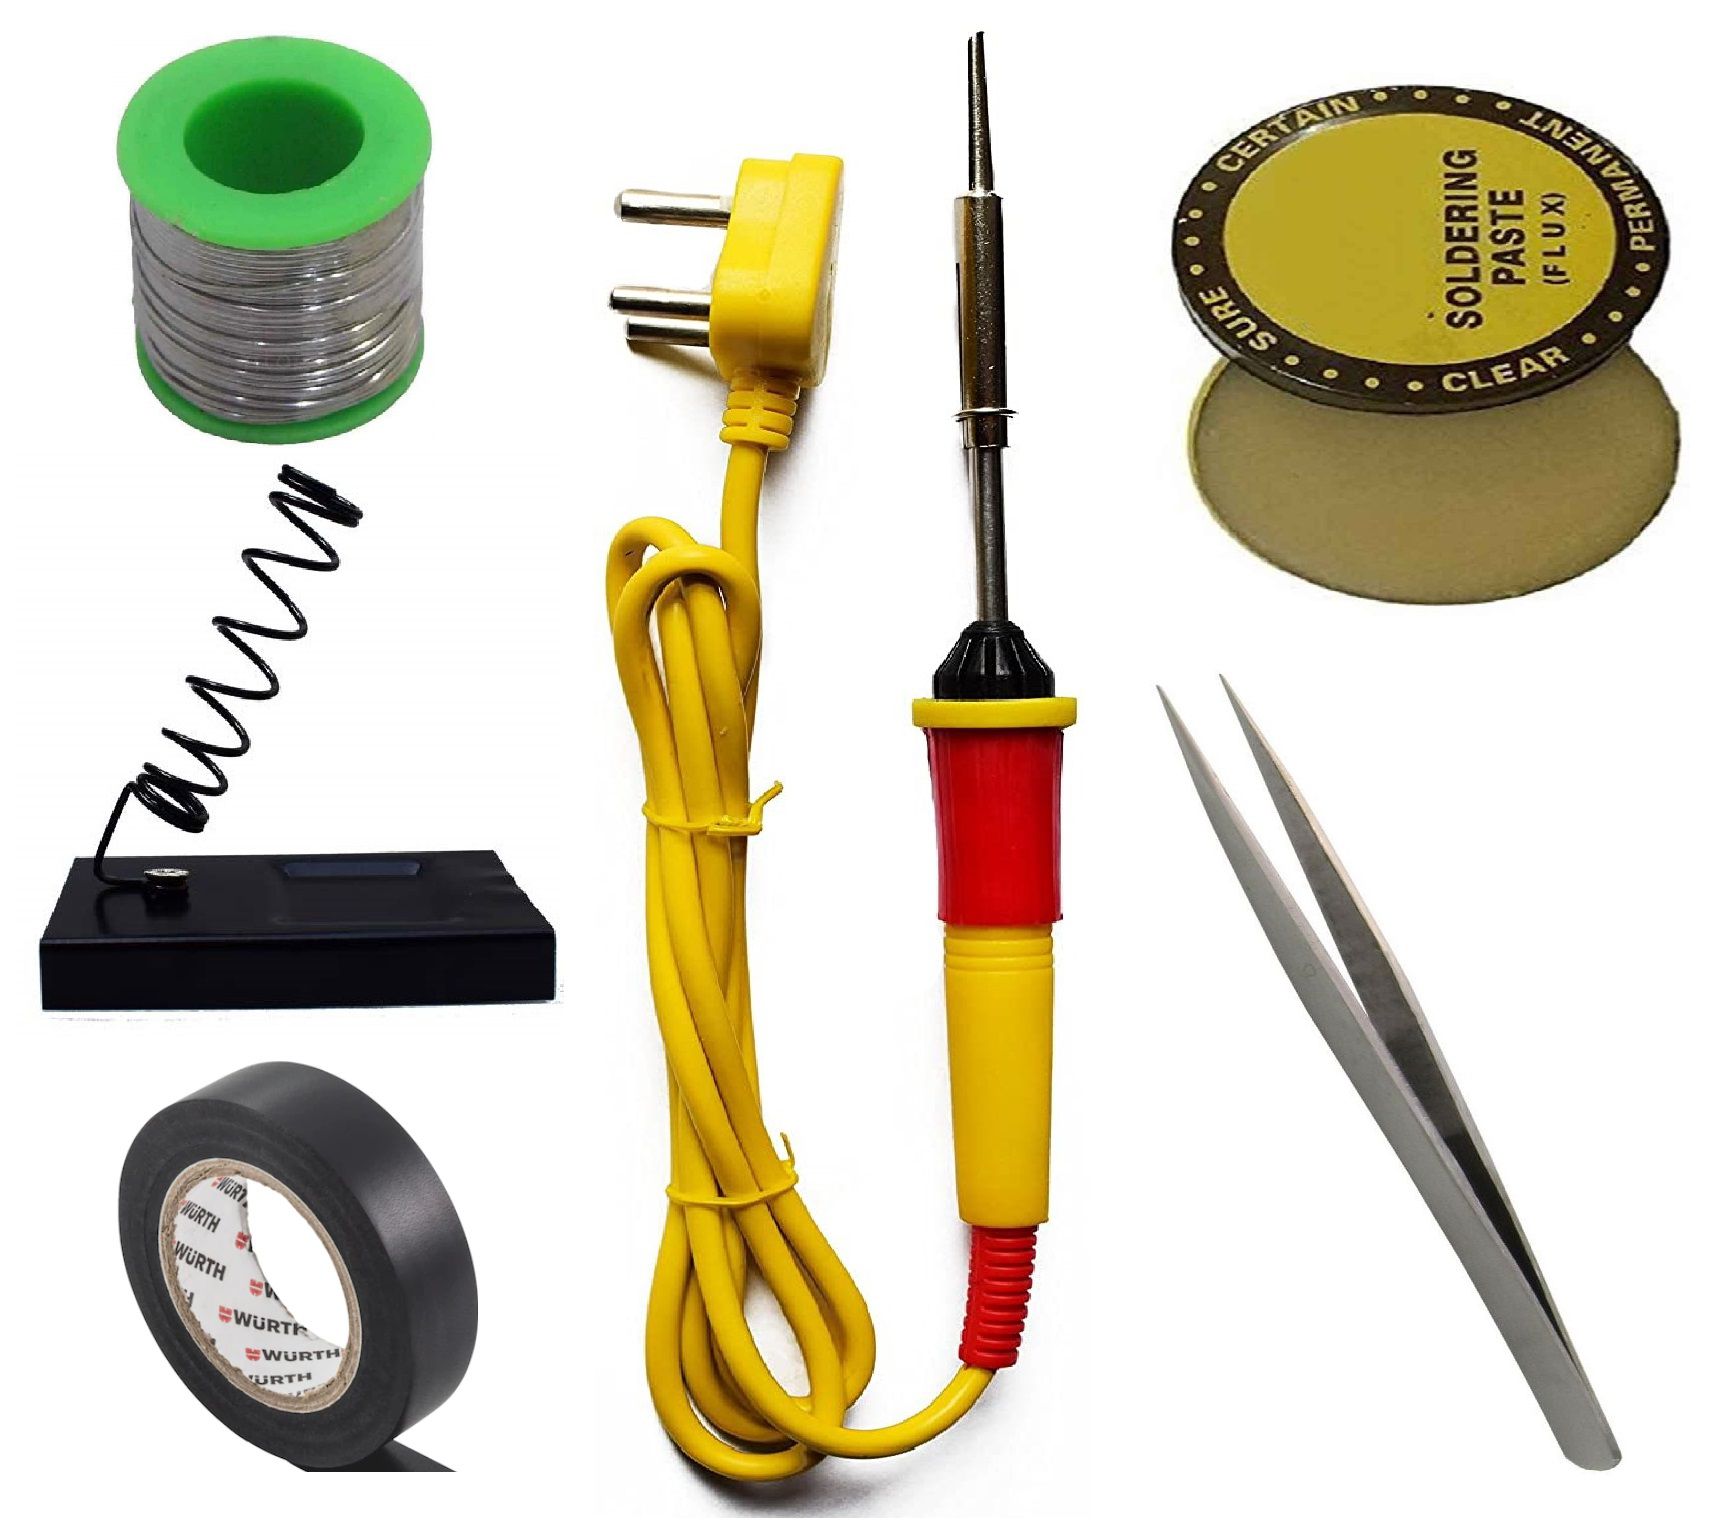 Ukoit (6 in 1) 25 Watt Soldering Iron Kit including Light Indicator Red Soldering Iron, Soldering Wire, Flux, Iron Stand, Tweezer and Tape